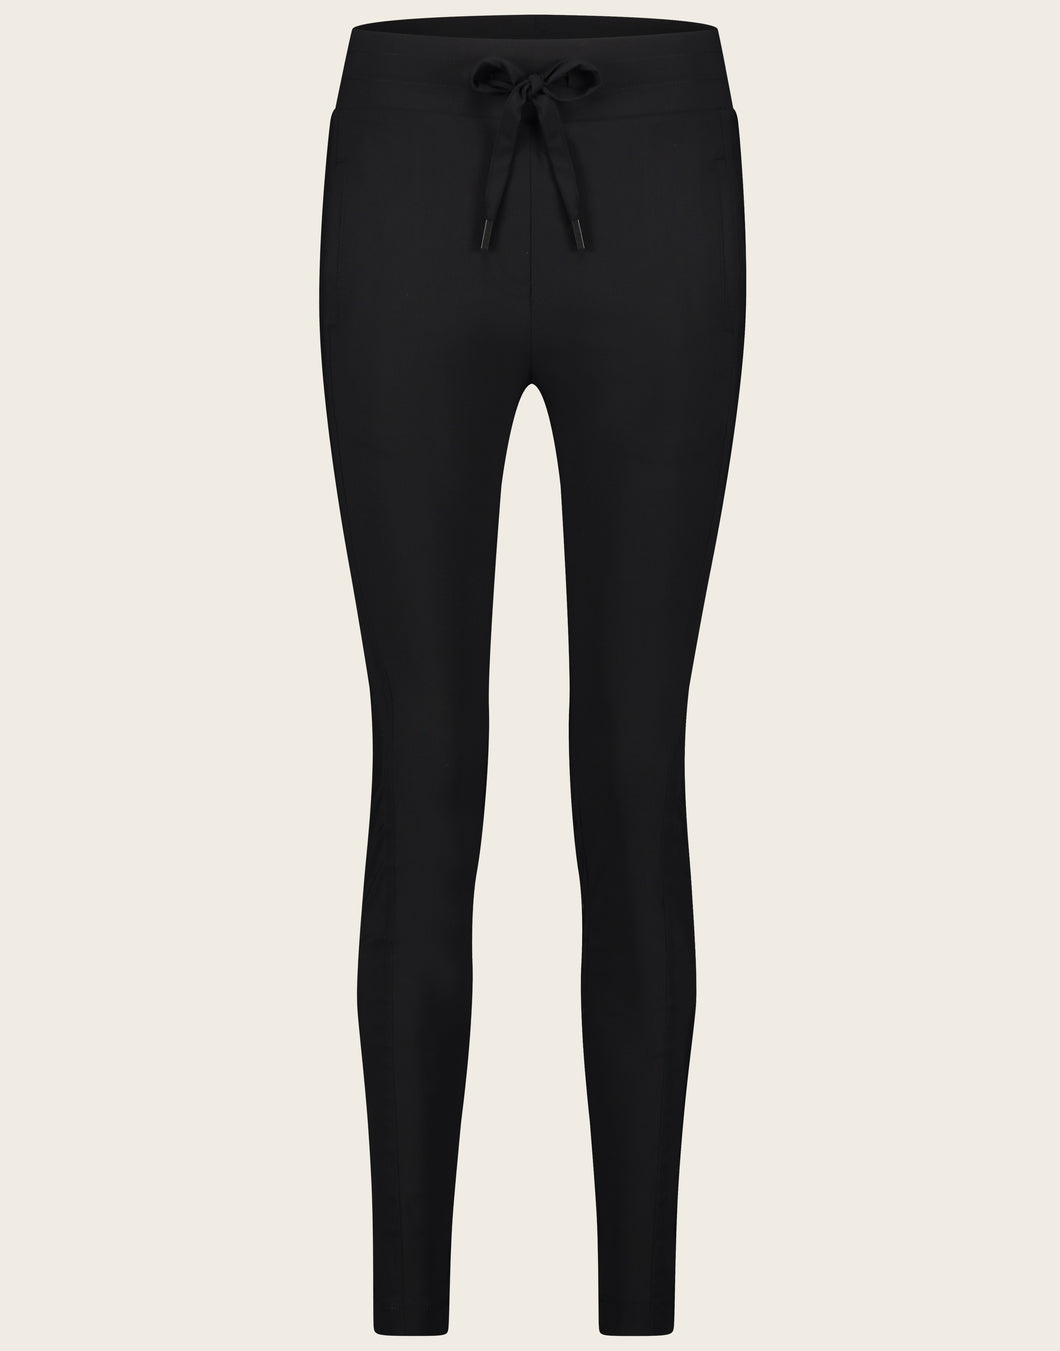 De broek Anna Skinny Fit is een mooie tijdloze broek uit de basis collectie van Jane Luskha. Deze broek is het model skinny fit, heeft een smalle pijp en een tailleband met trekkoord. De broek is uitgevoerd in de kleur zwart 